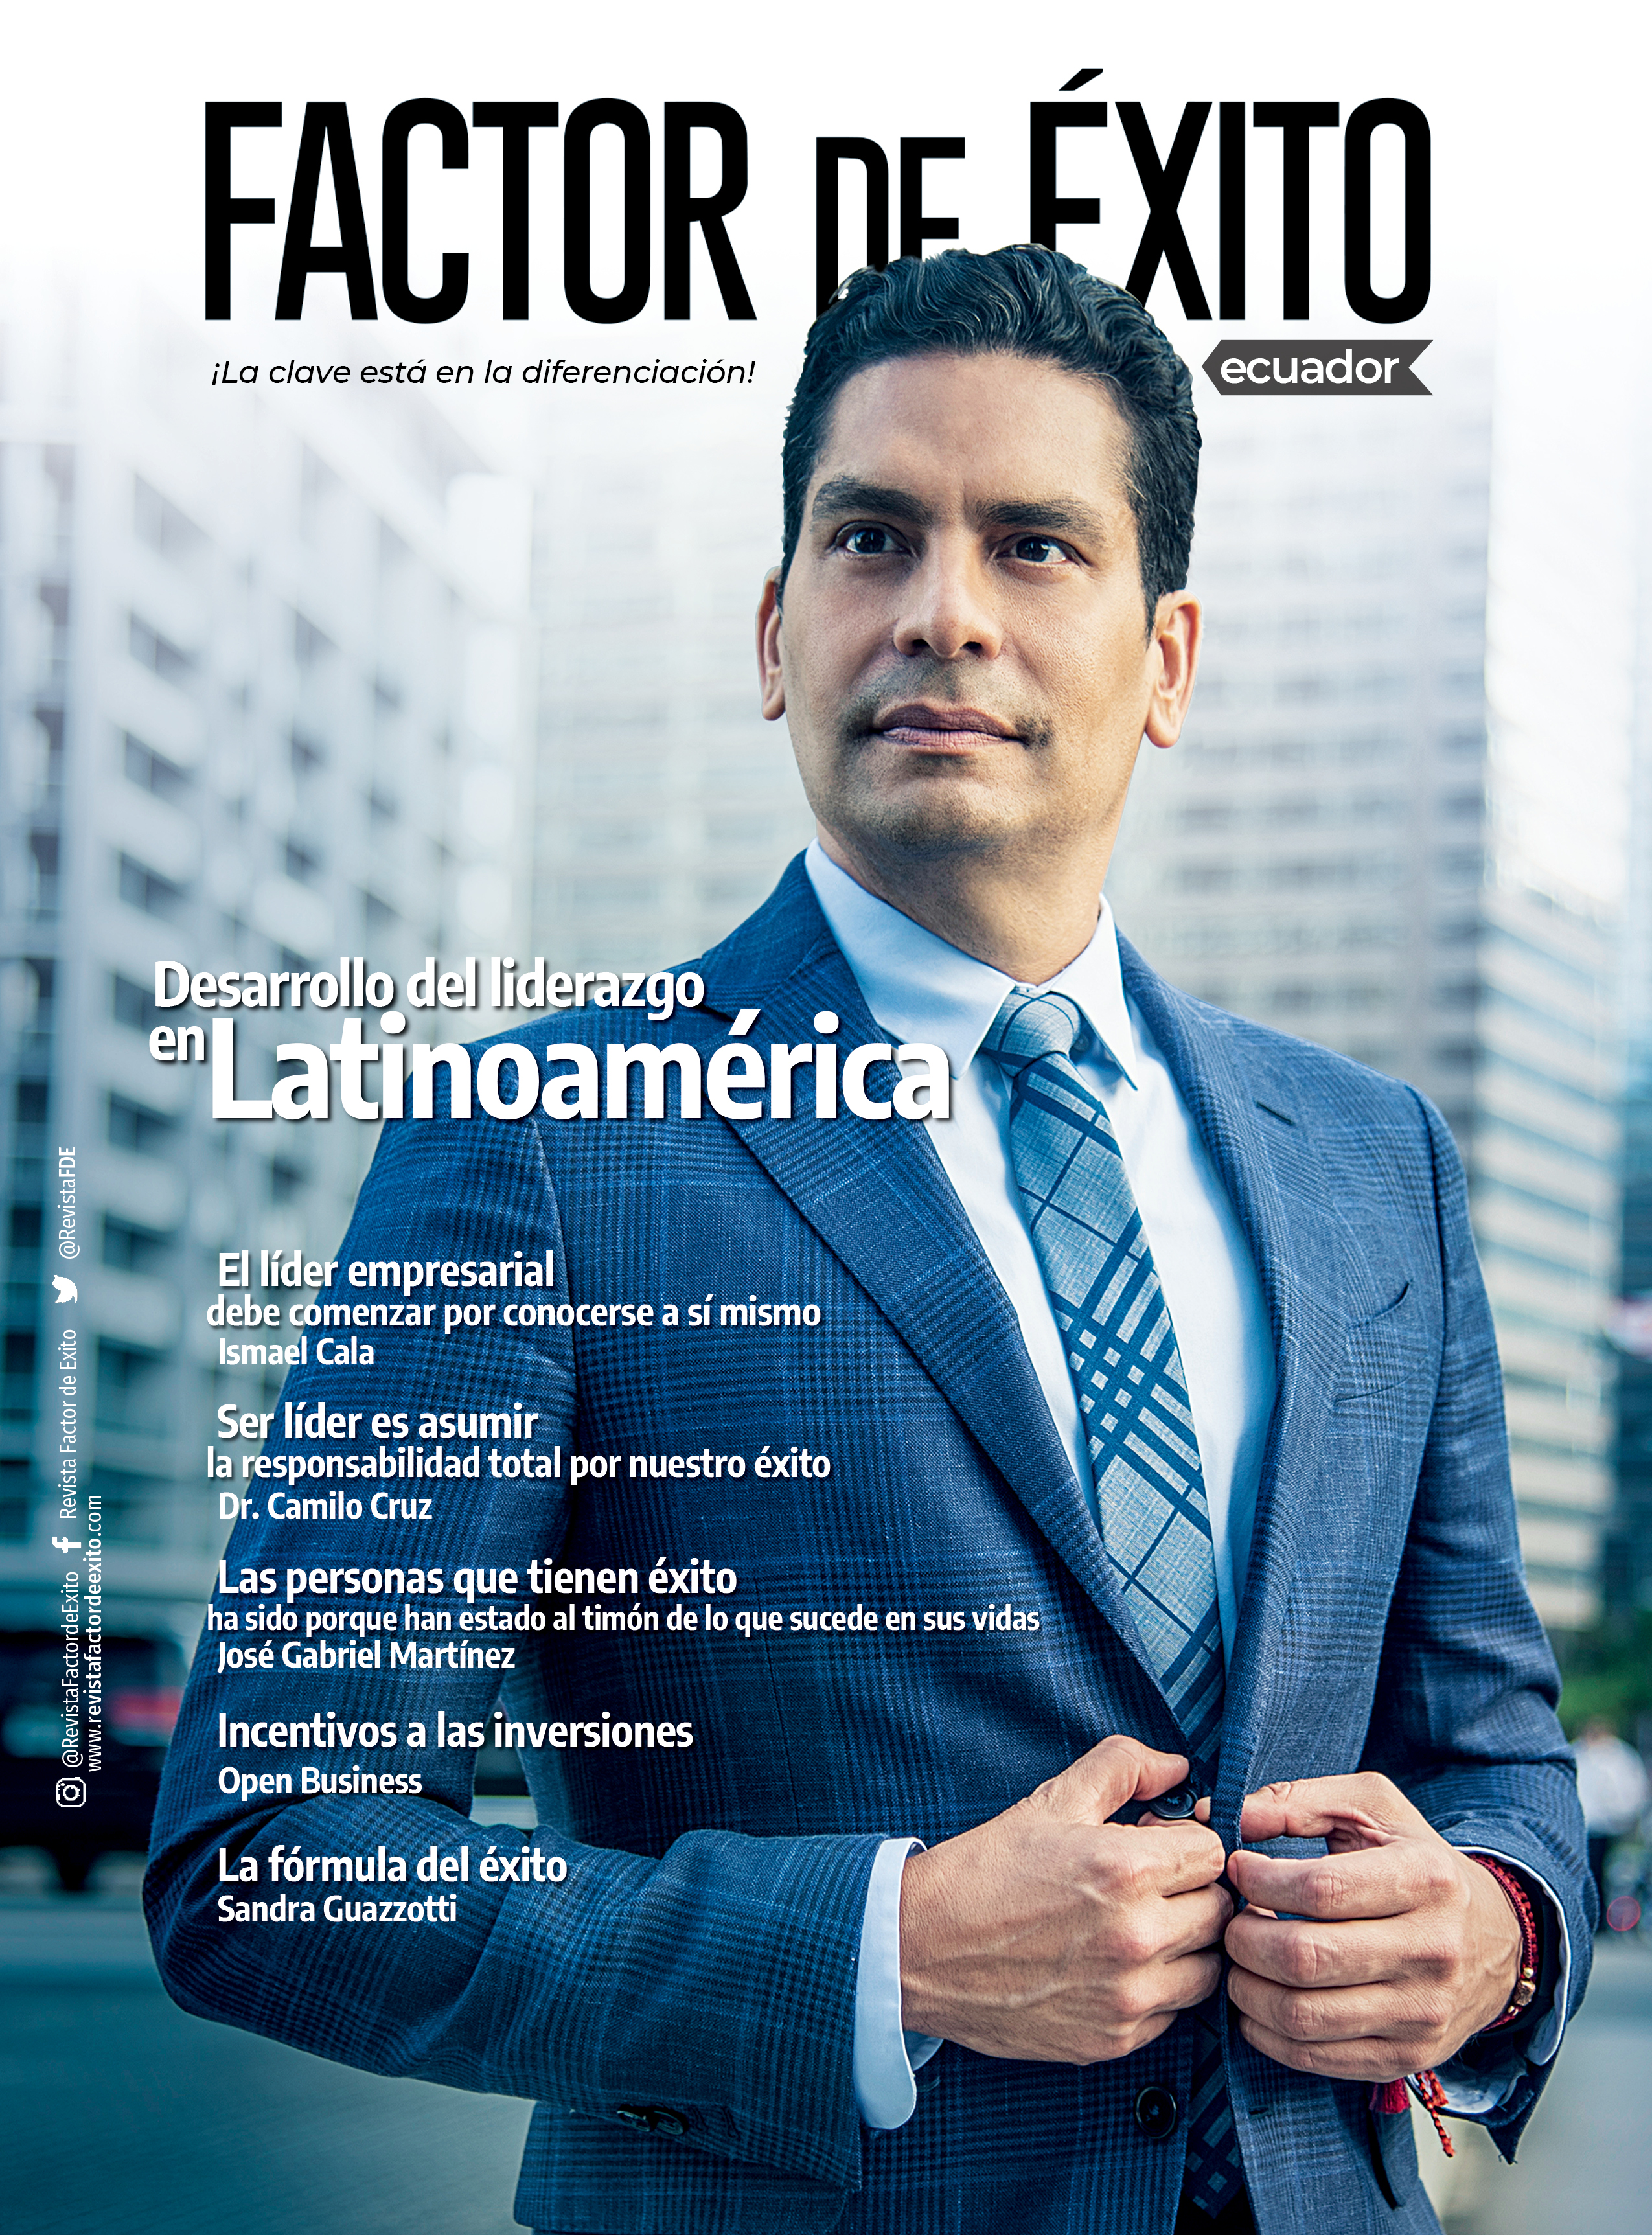 ECUADOR  edición #1 Revista Factor de Éxito